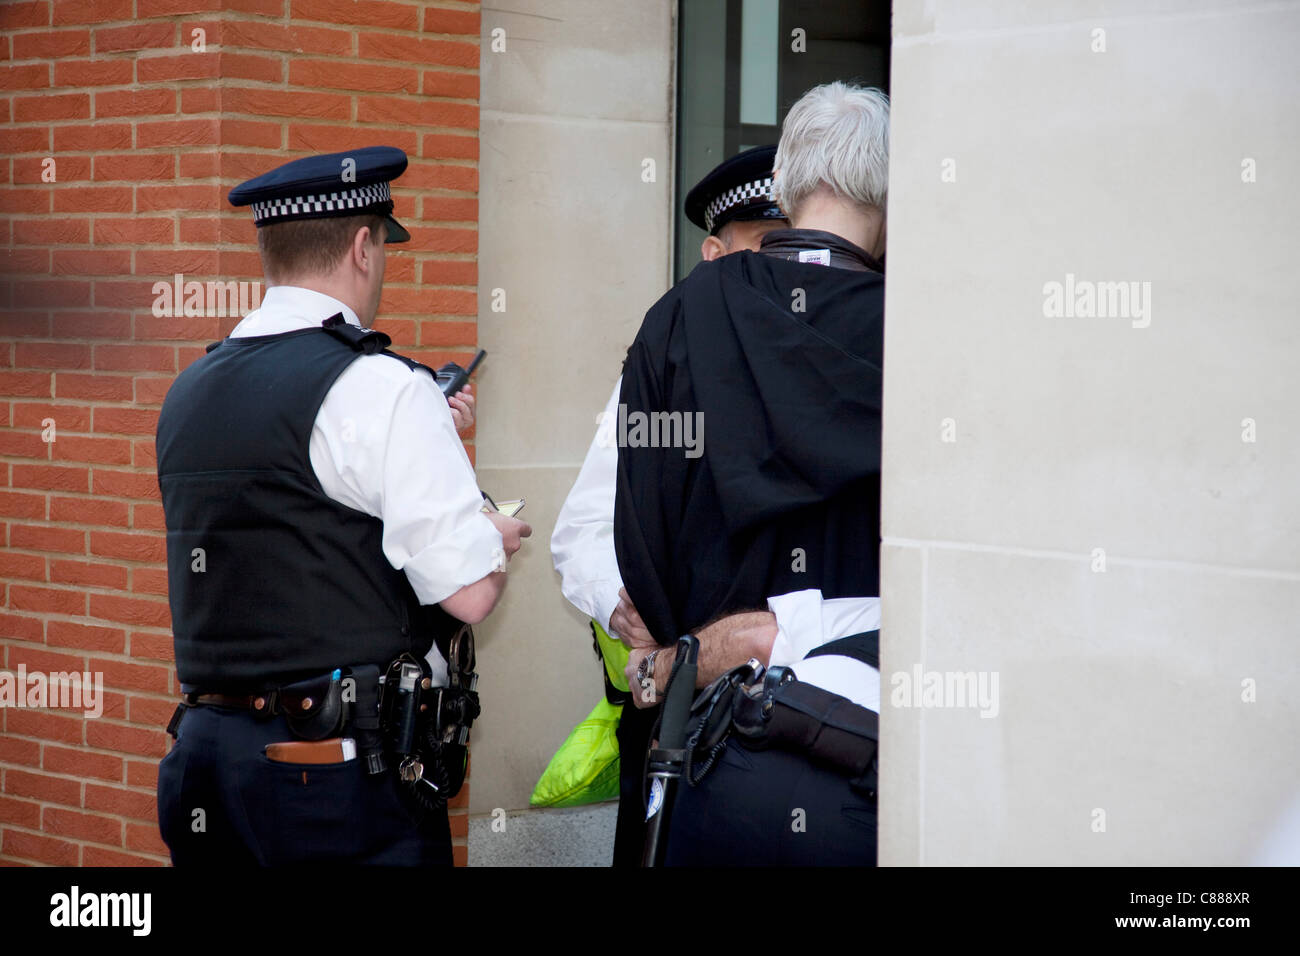 Julian Assange de WikiLeaks à la manifestation Occupy London 15 octobre 2011. Vu ici, il essaie de passer à travers les lignes de police portant une cape noire, le capot et le masque. Il a immédiatement demandé de retirer le masque où il a été traîné dans sur, interrogé et relâché. Banque D'Images